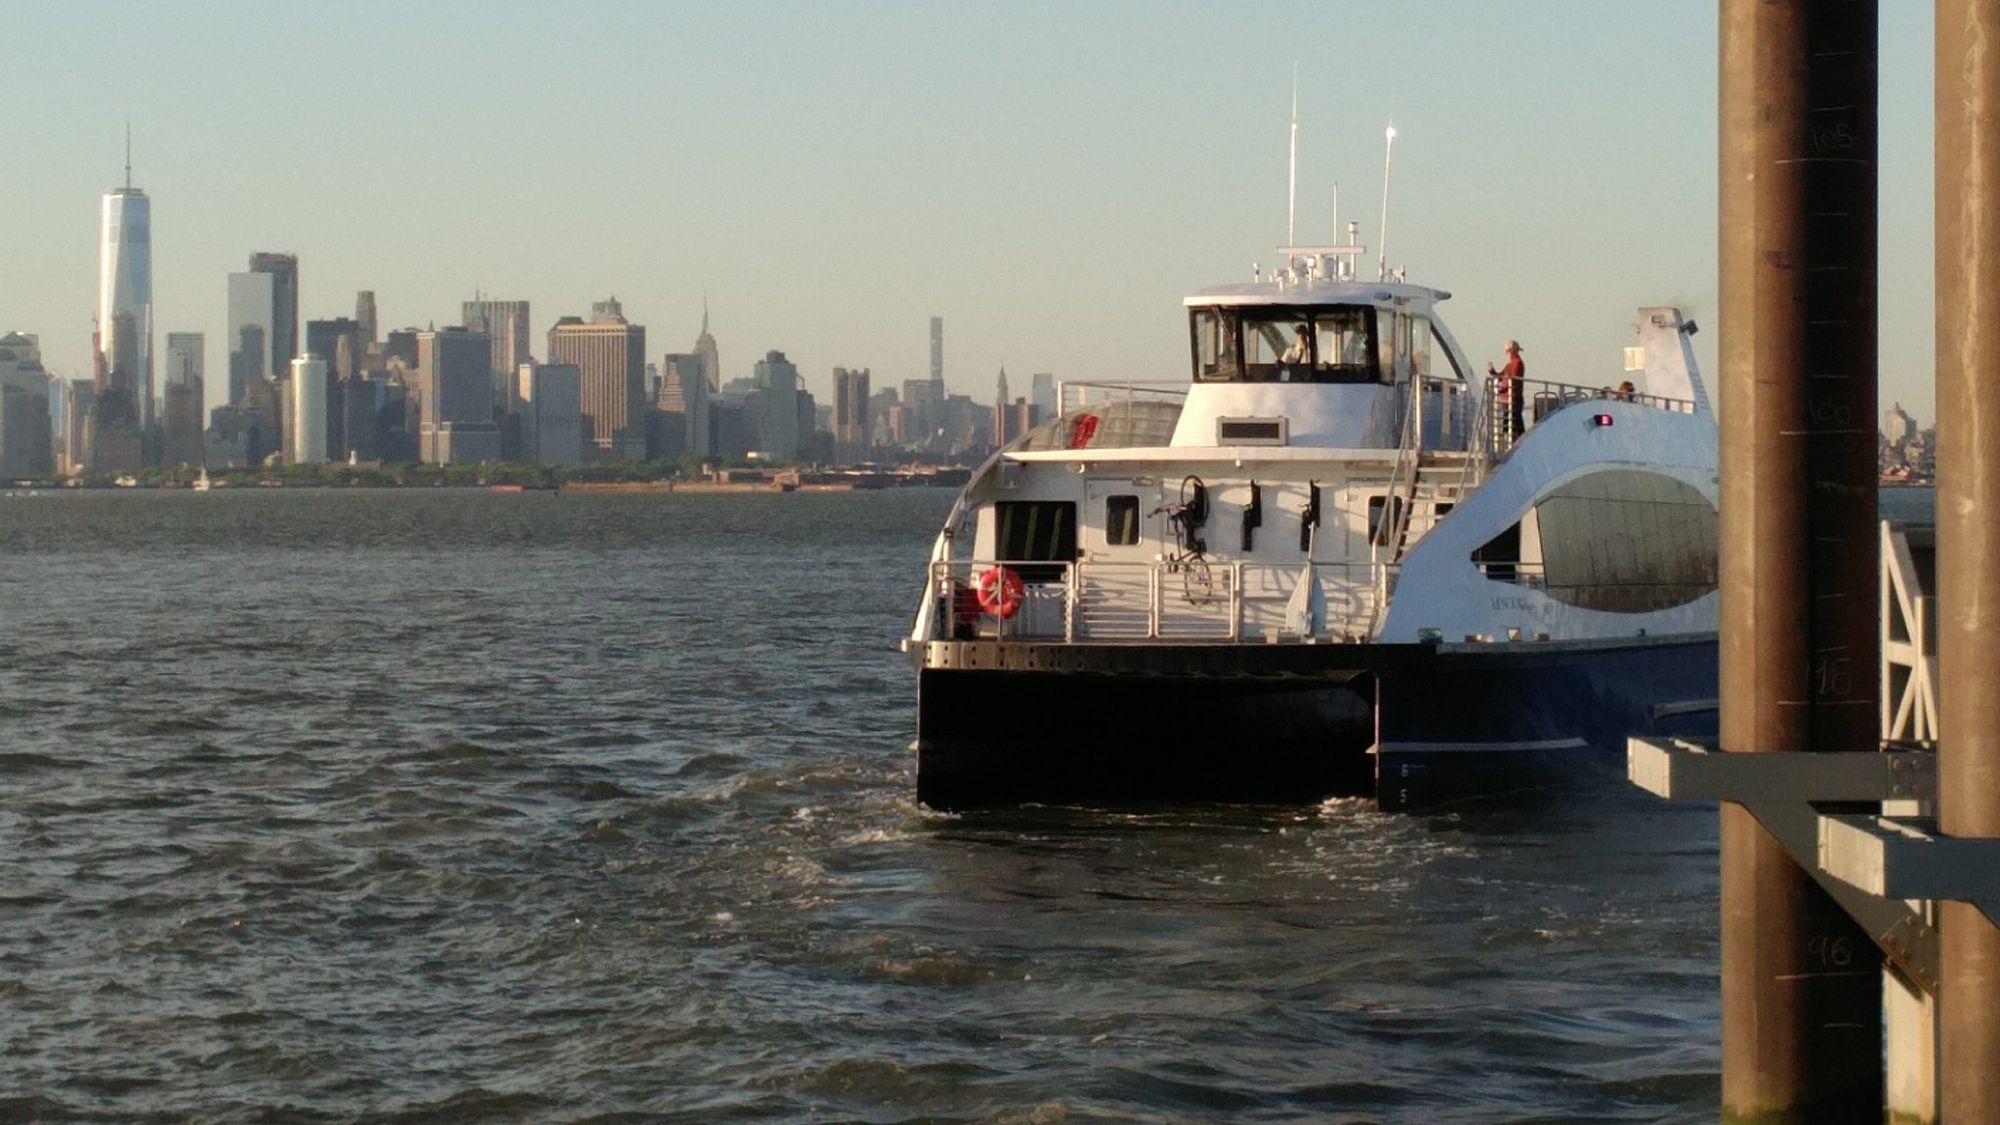 De Blasio Announces NYC Ferry Service For Coney Island – in 2021